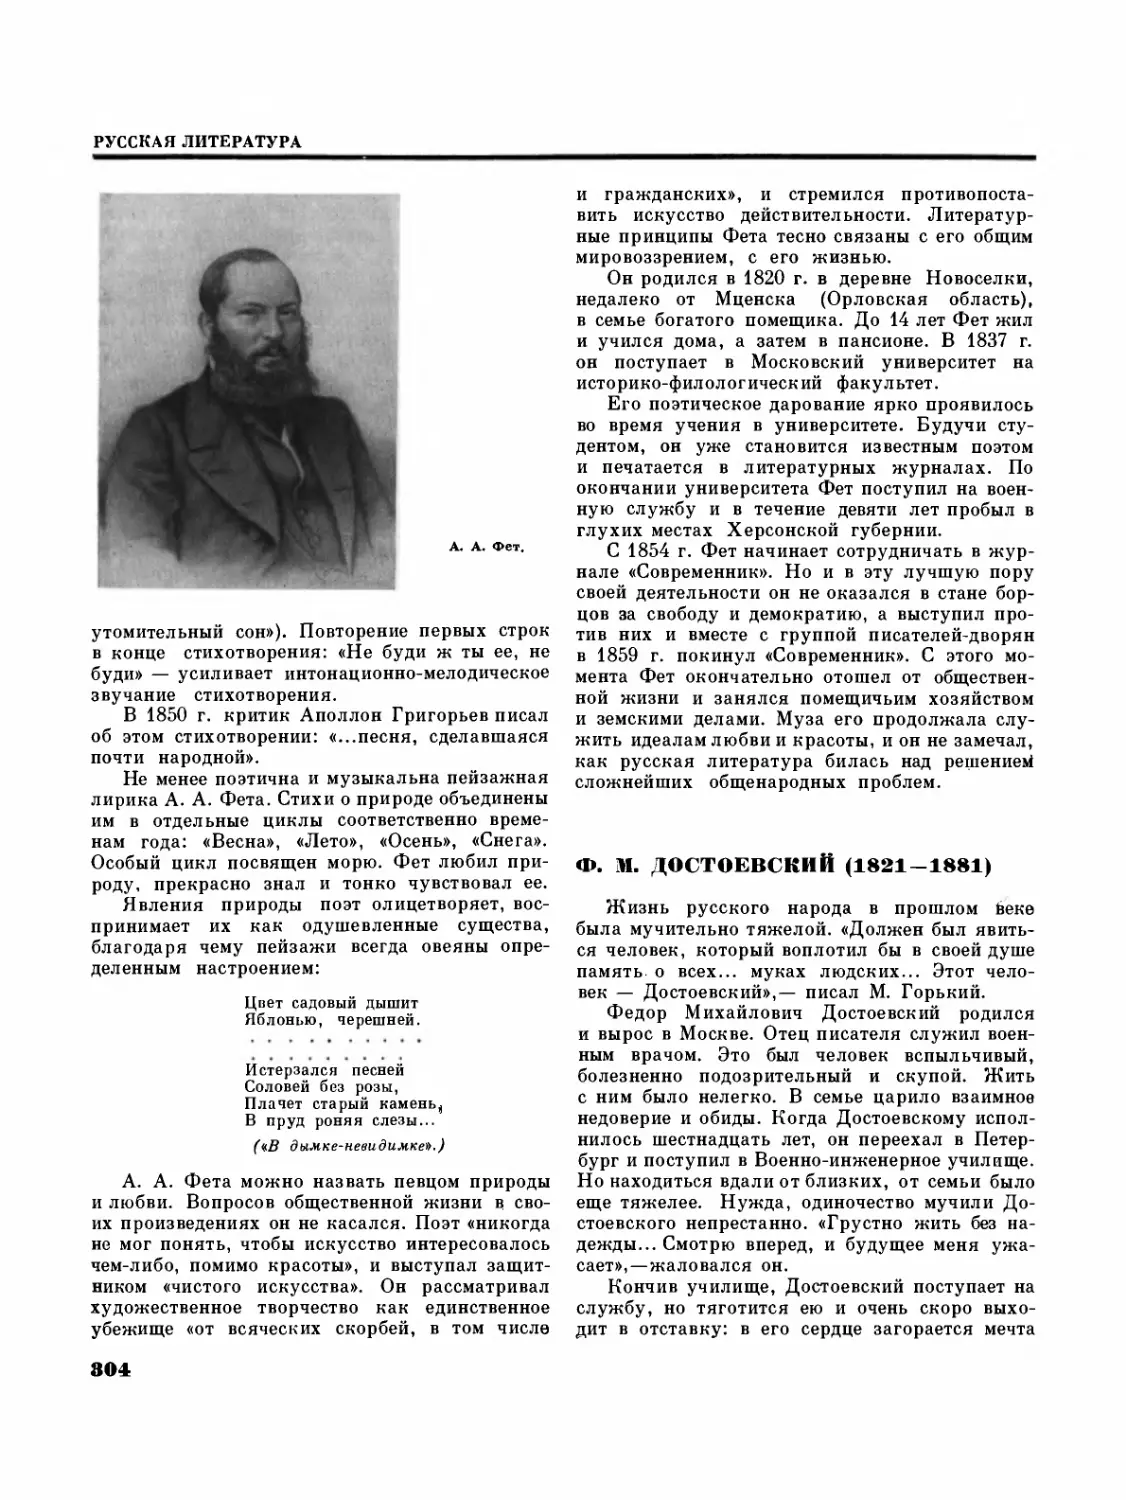 Ф.М. Достоевский — В. Е. Хализев